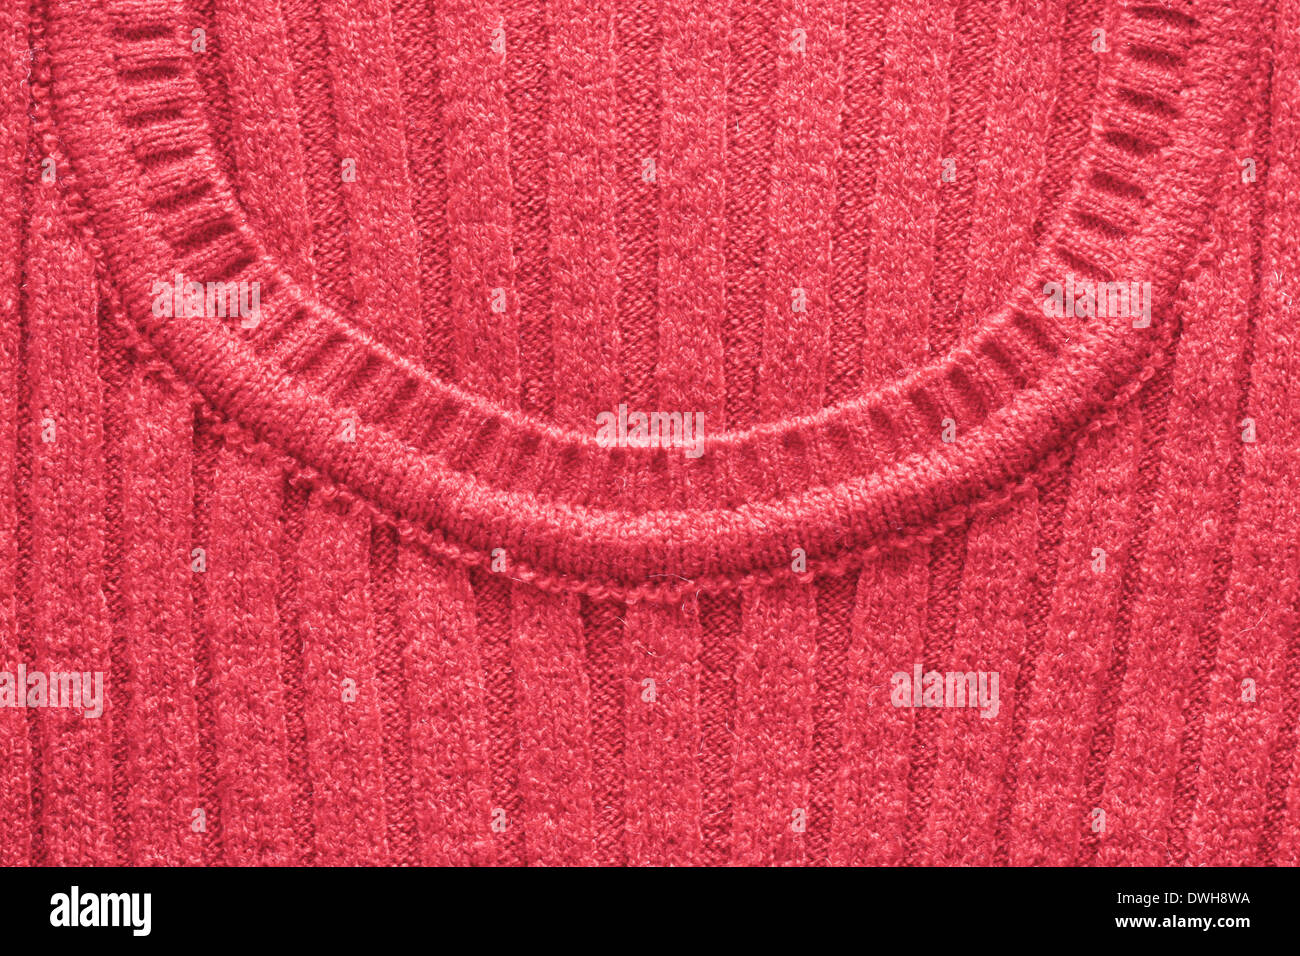 Cuello de lana roja de puente de la mujer Foto de stock